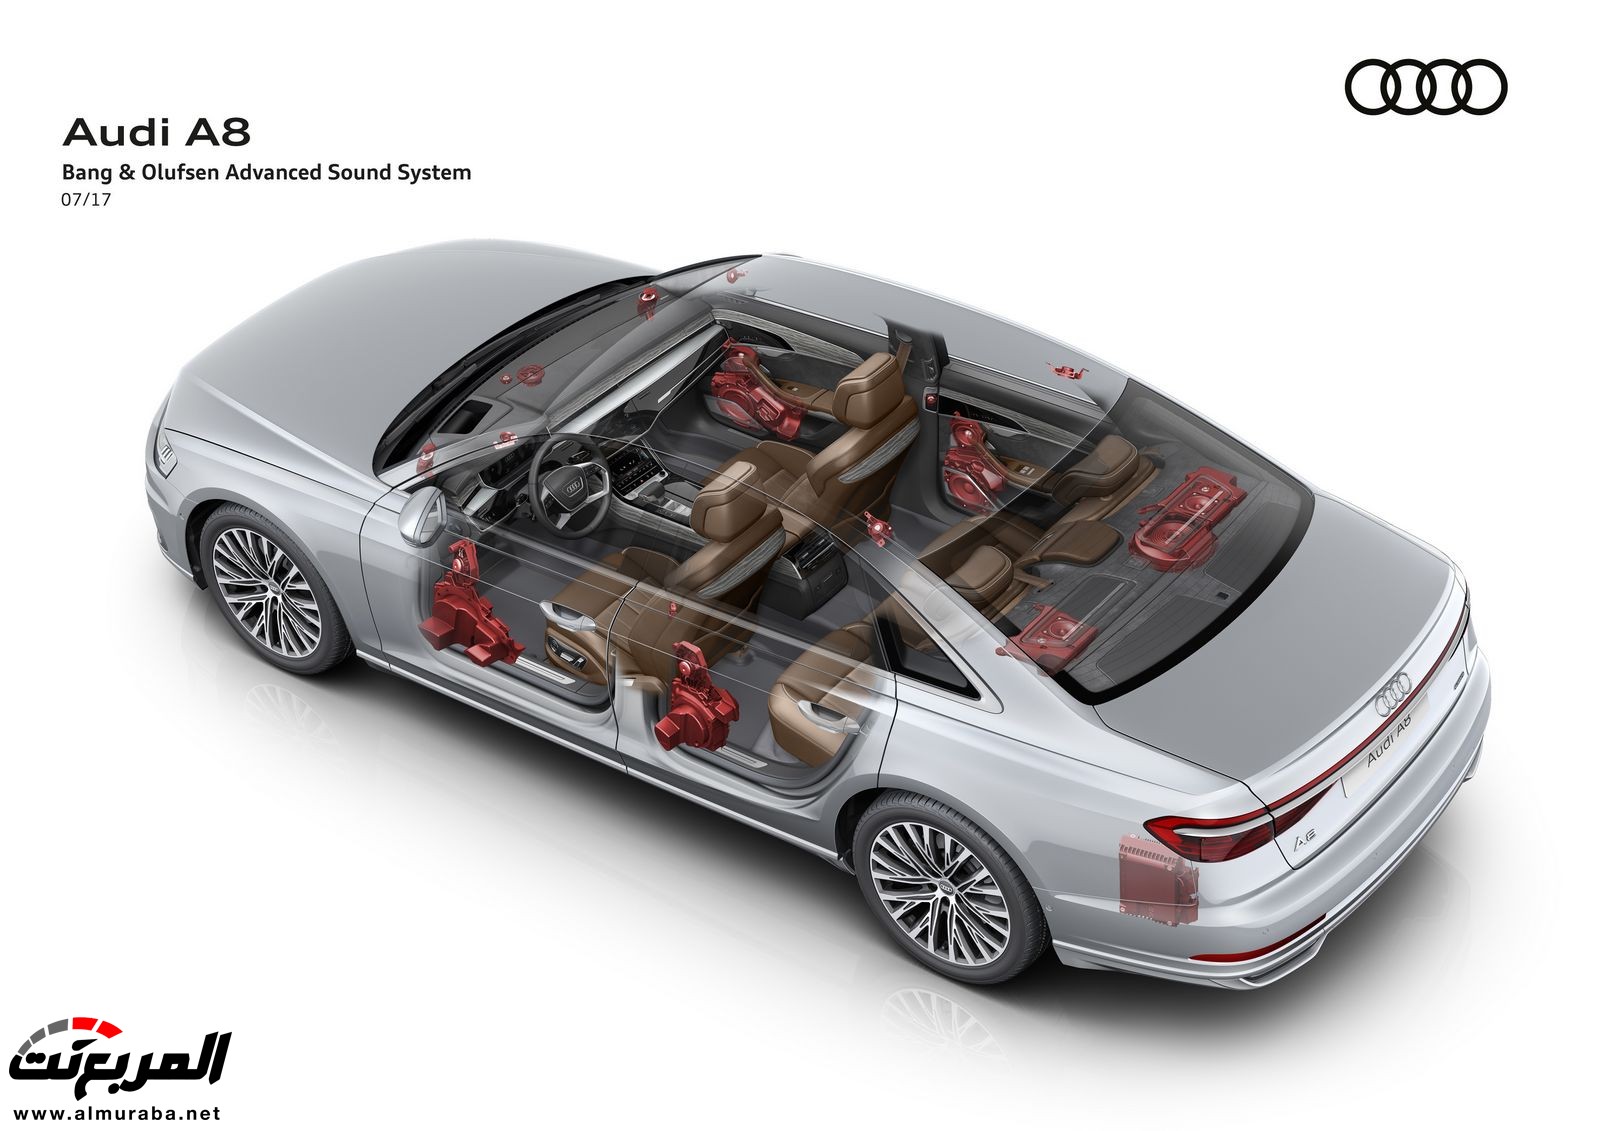 أودي A8 2018 الجديدة كلياً تكشف نفسها بتصميم وتقنيات متطورة "معلومات + 100 صورة" Audi A8 87